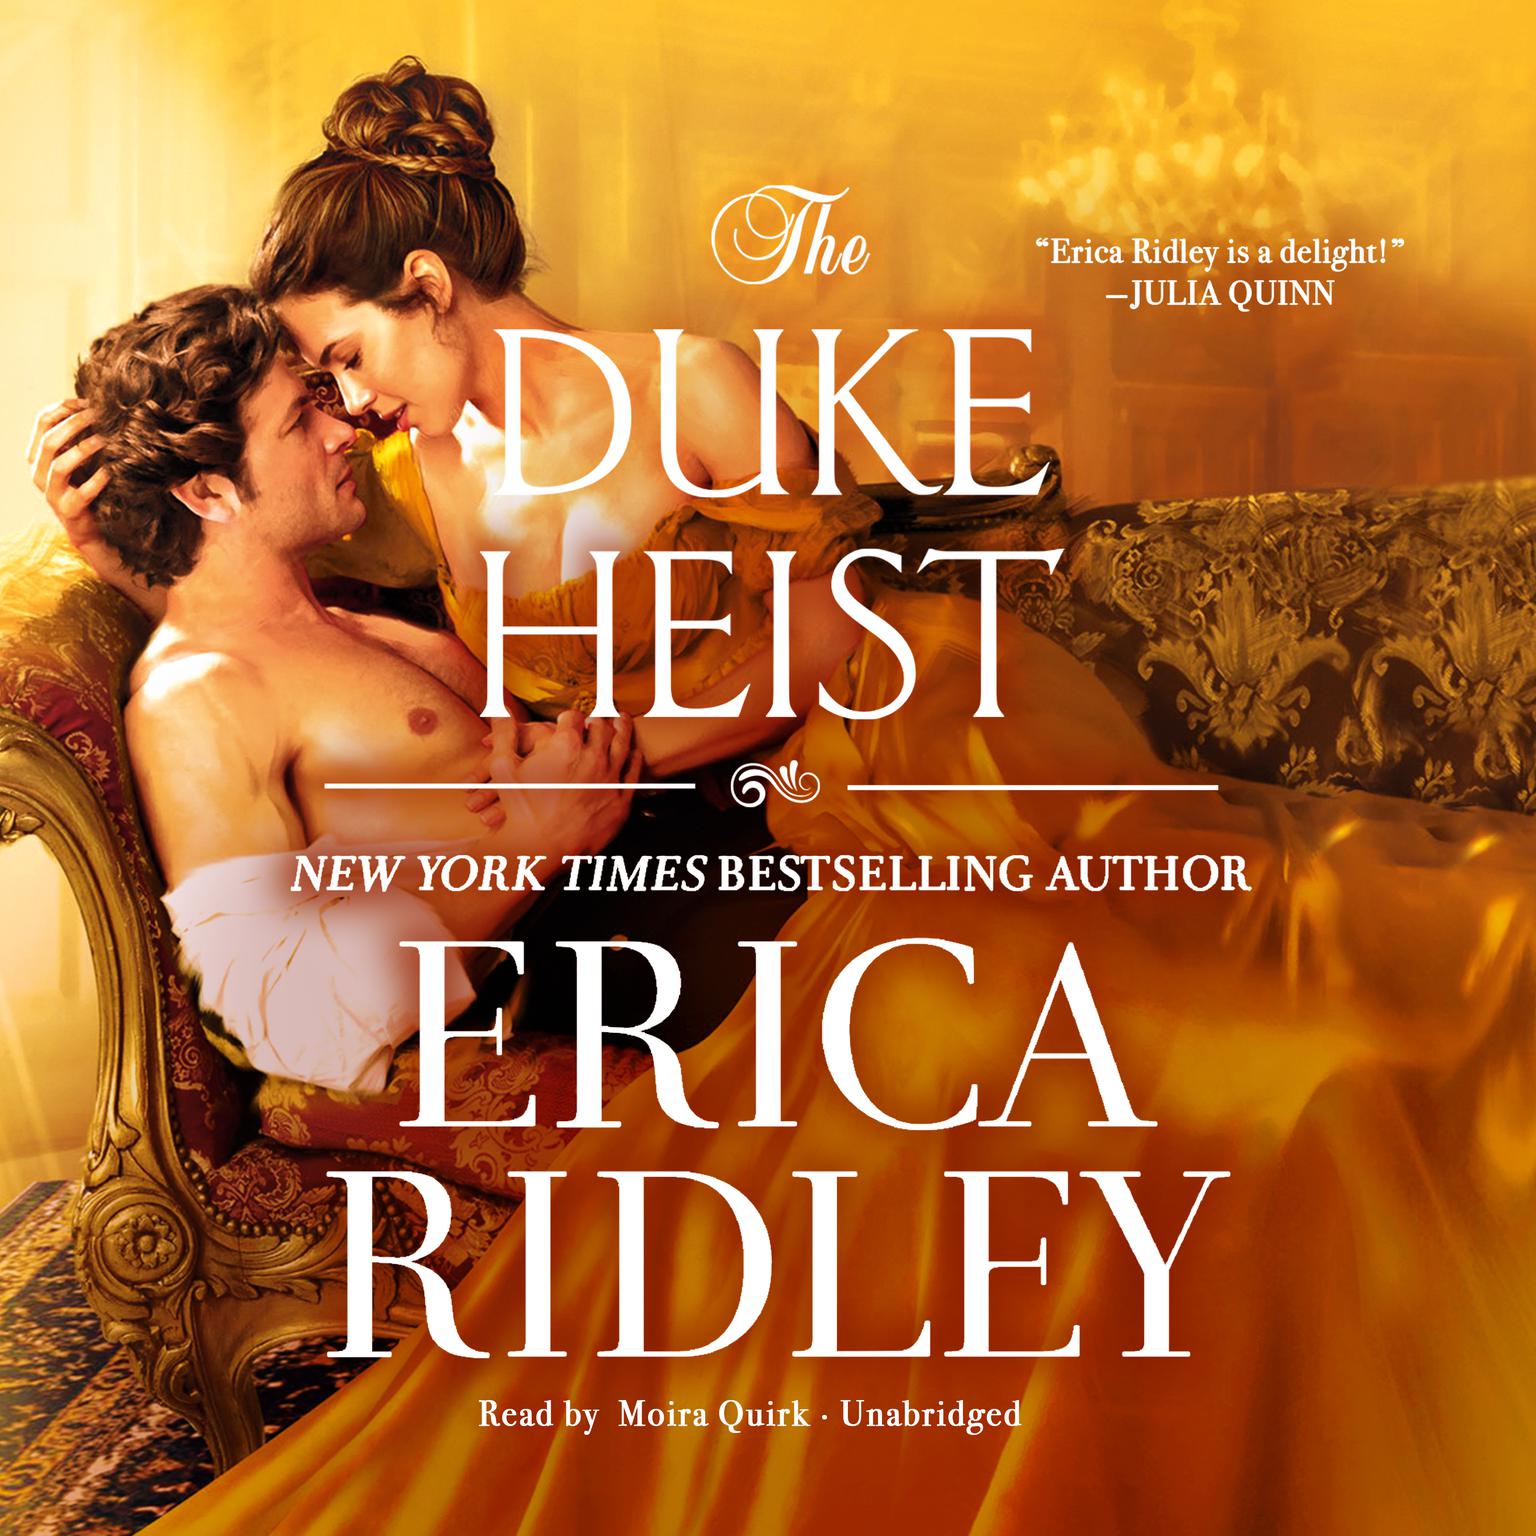 Erica Ridley, Moira Quirk: The Duke Heist (AudiobookFormat, 2021, Forever)